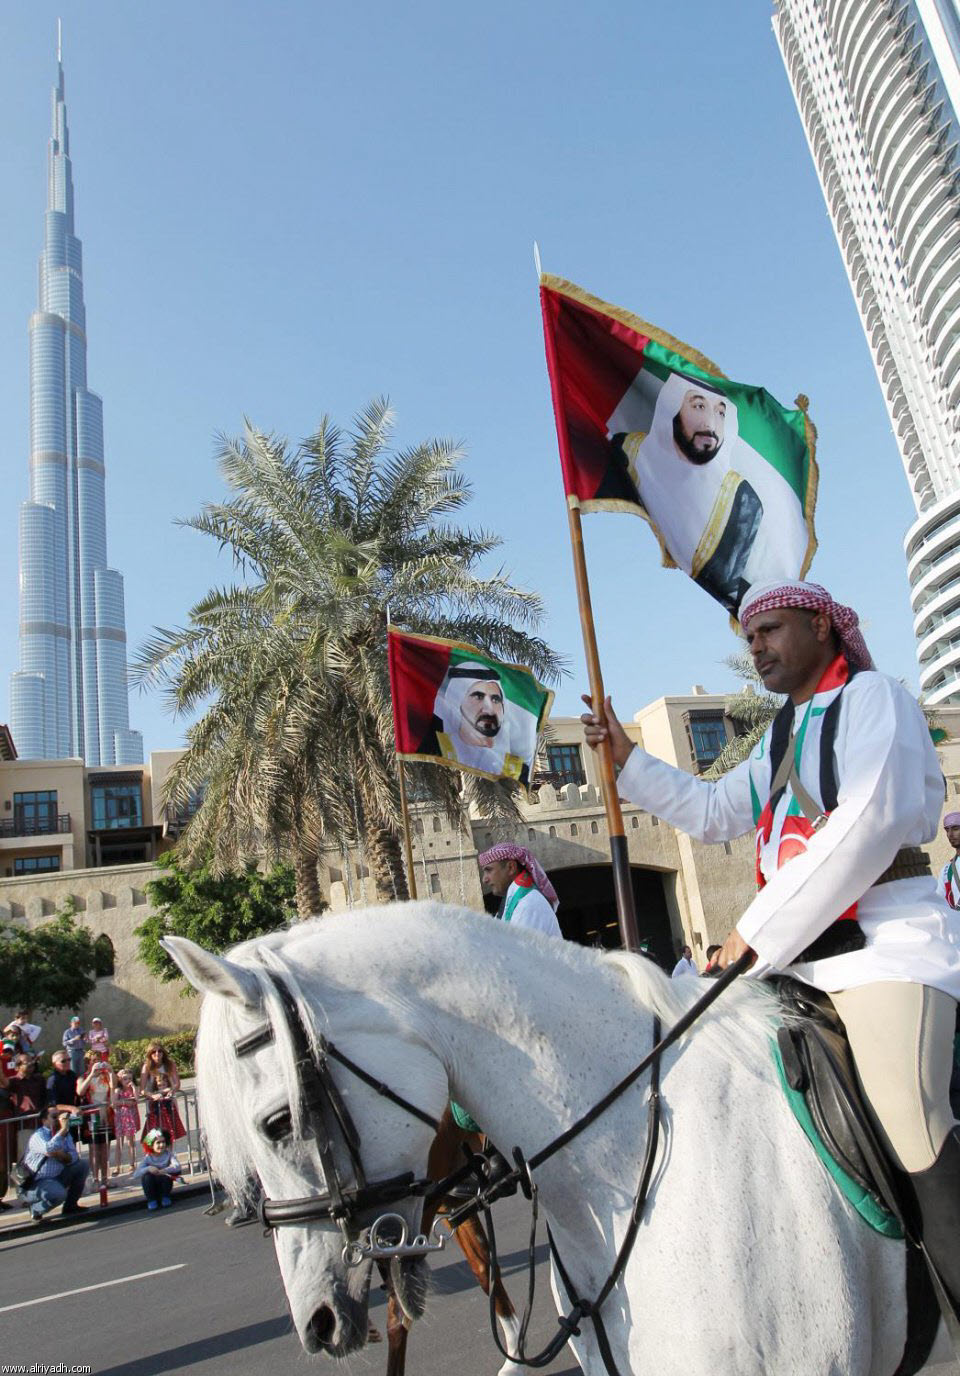 الإمارات تحتفل بيومها الوطني 2012 - بالصور الإمارات تحتفل بيومها الوطني - الإمارات تحتفل بيومها الوطني ال 41 - شاهد بالصور الإمارات تحتفل بيو